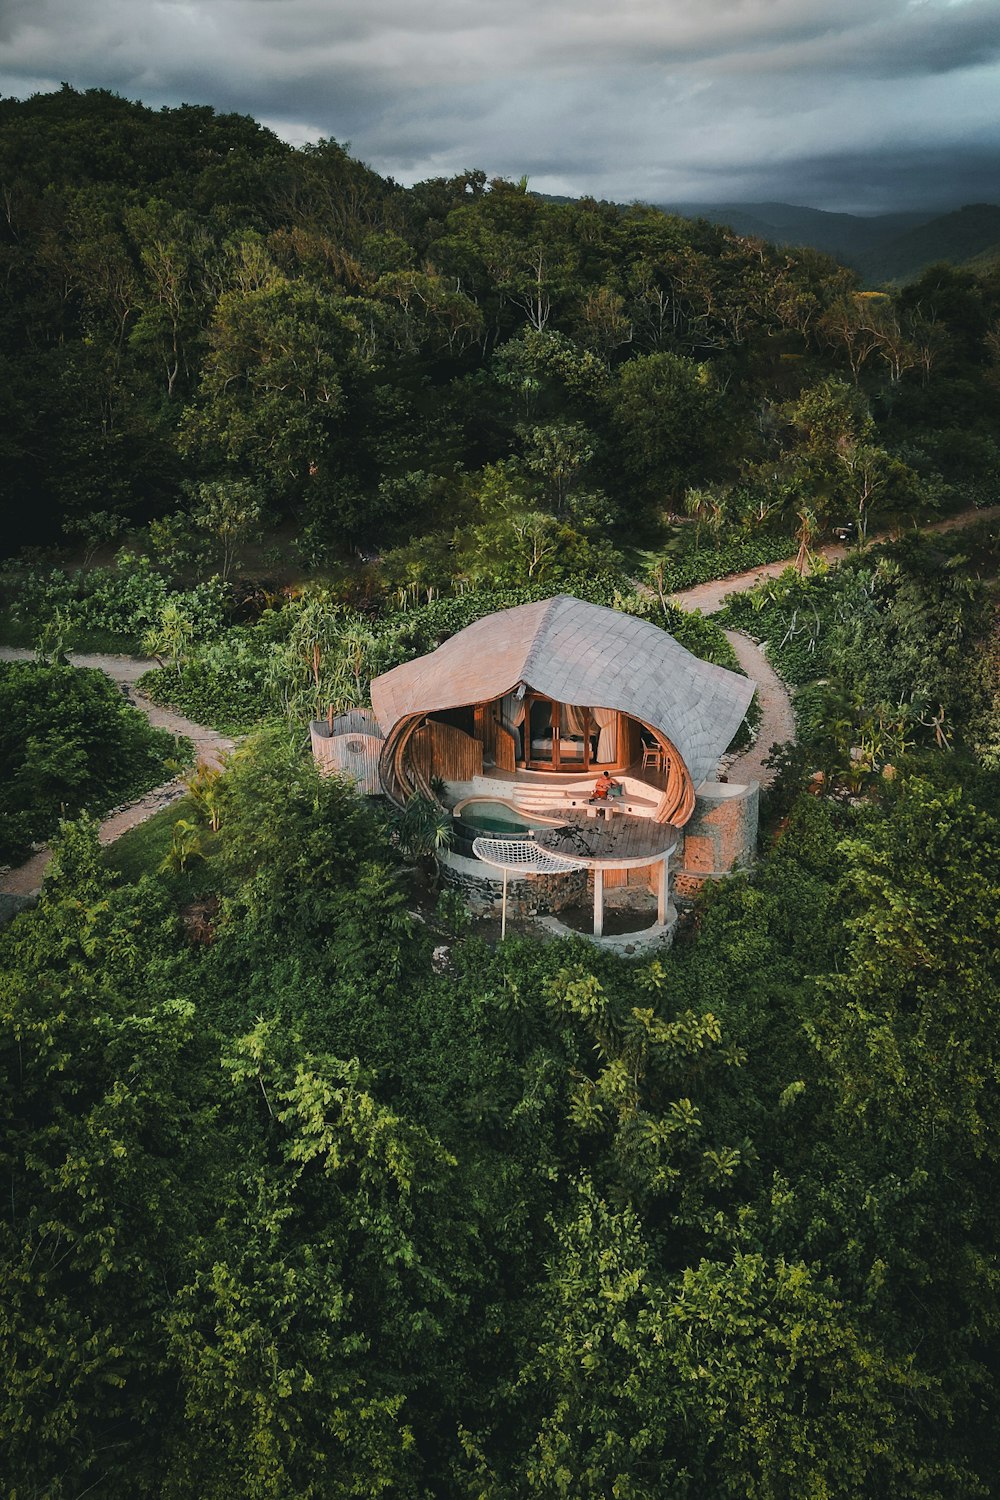 Una vista aérea de una casa en medio de un bosque